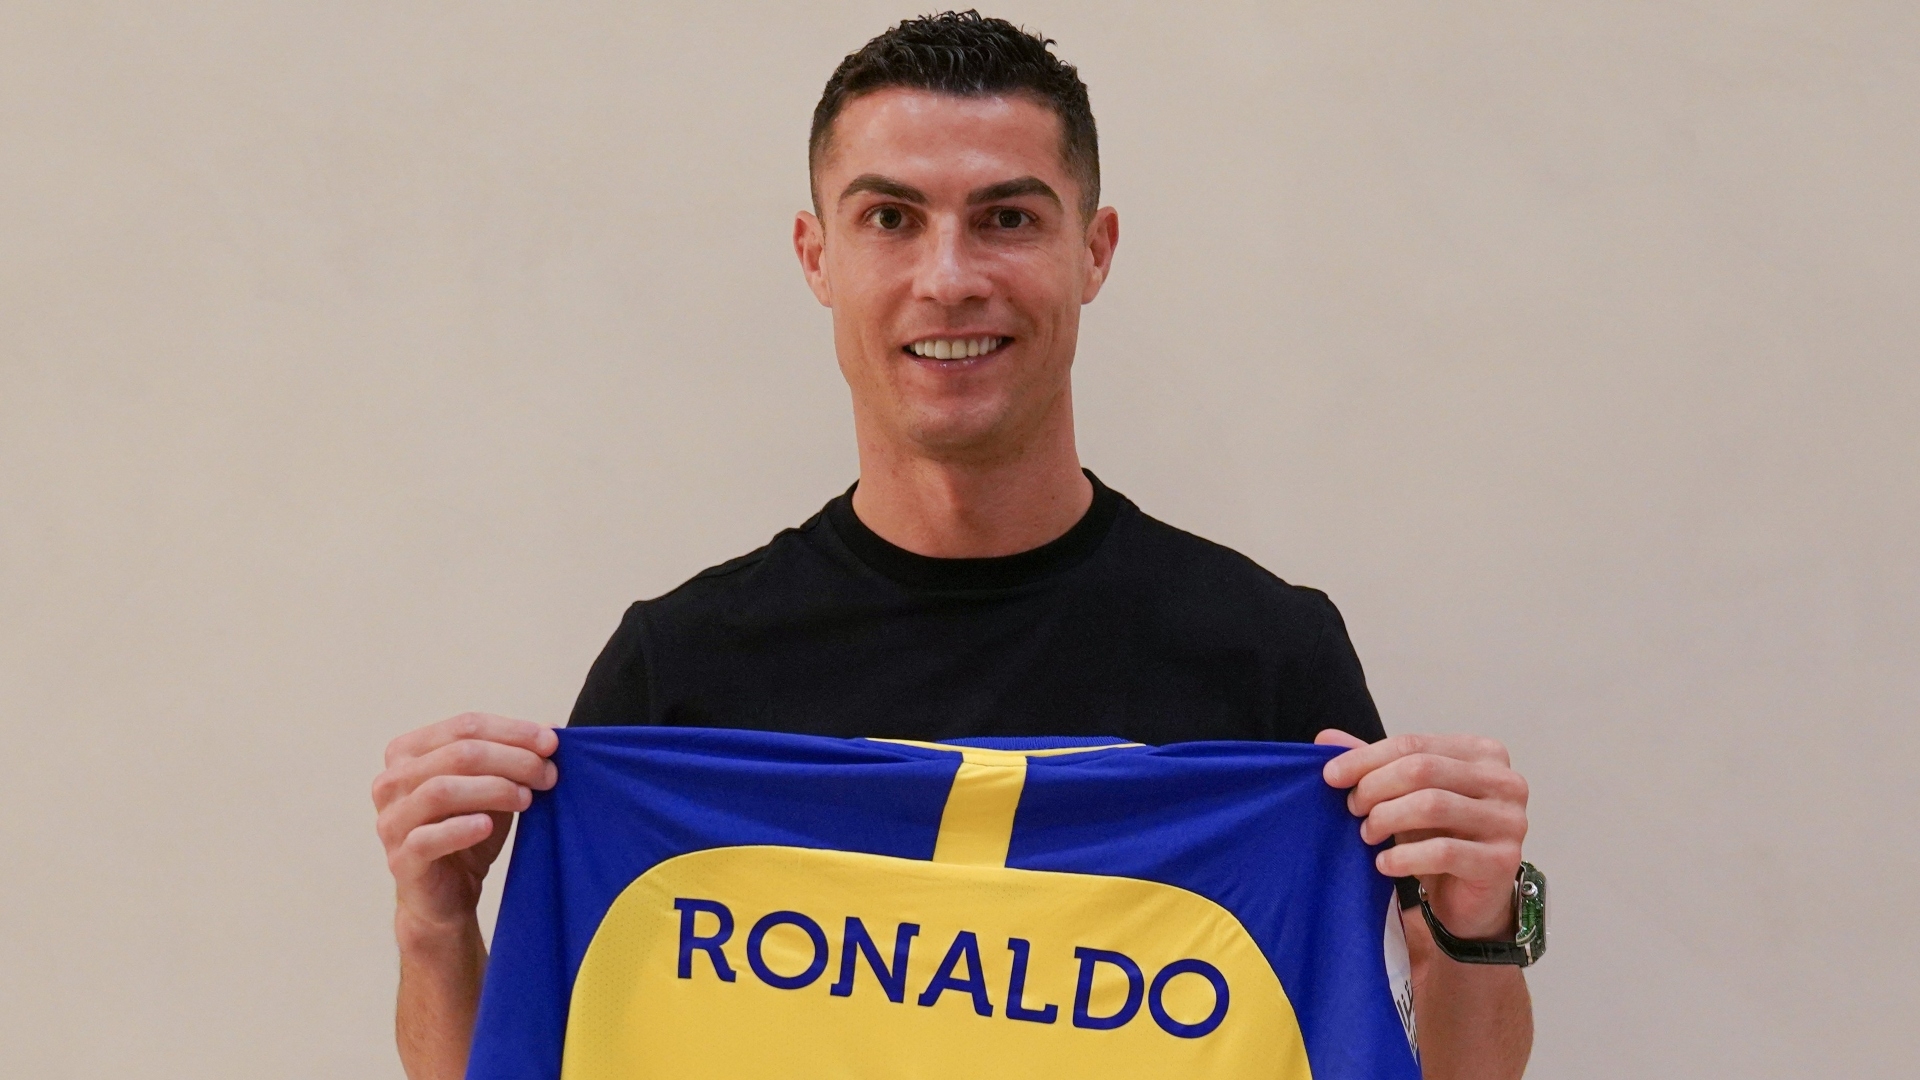 Oficial: Cristiano Ronaldo es nuevo jugador del Al Nassr de la liga árabe